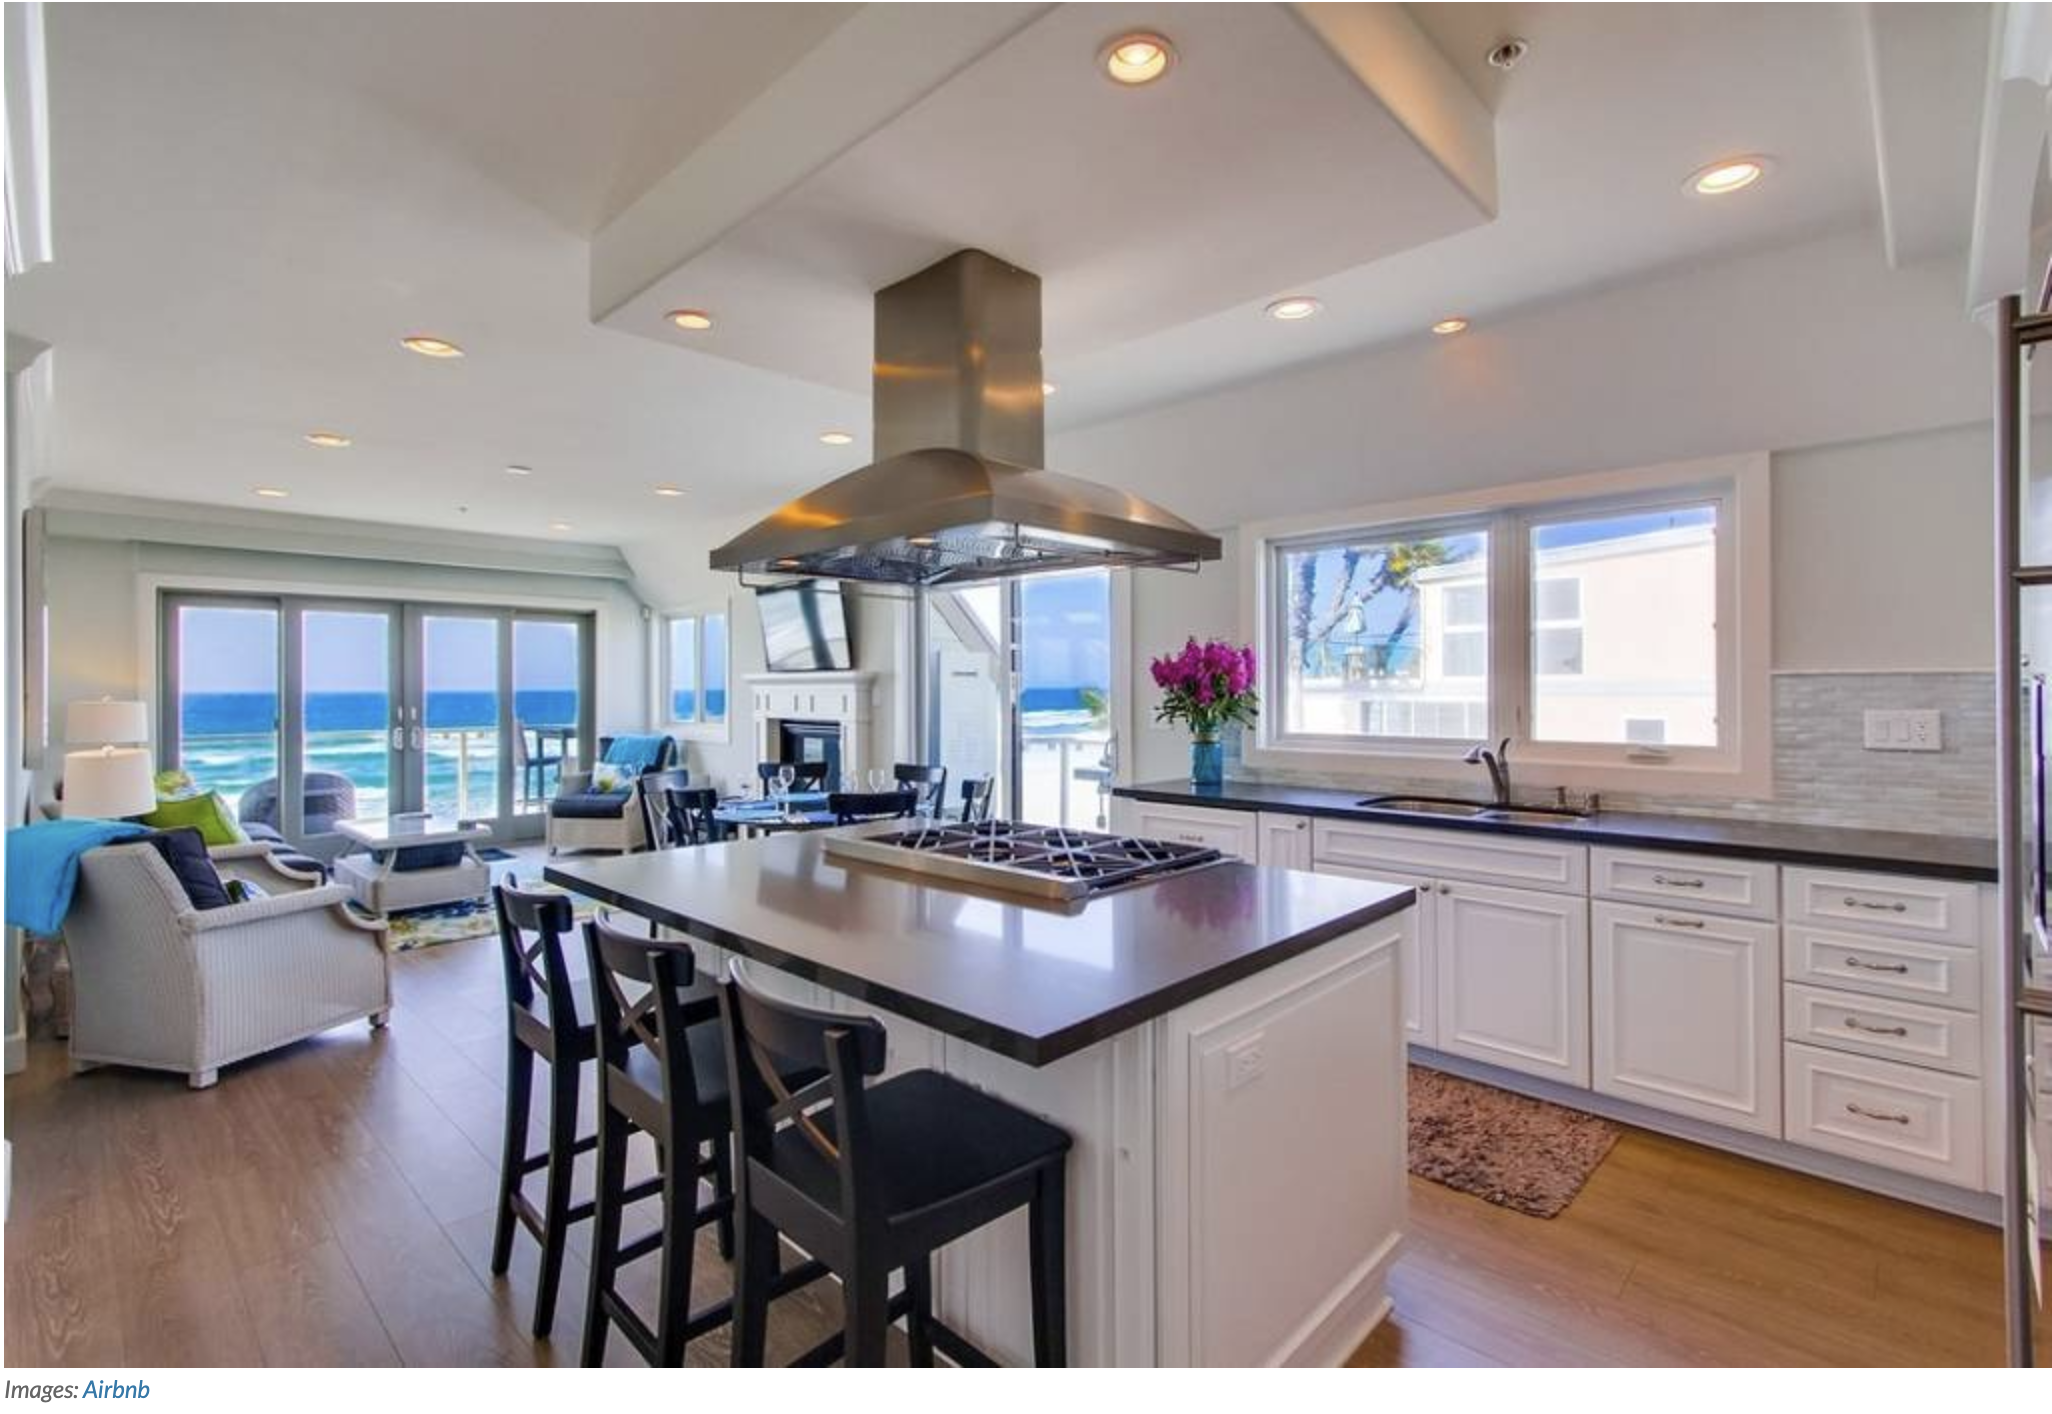 Best luxury airbnb kitchen in San Diego